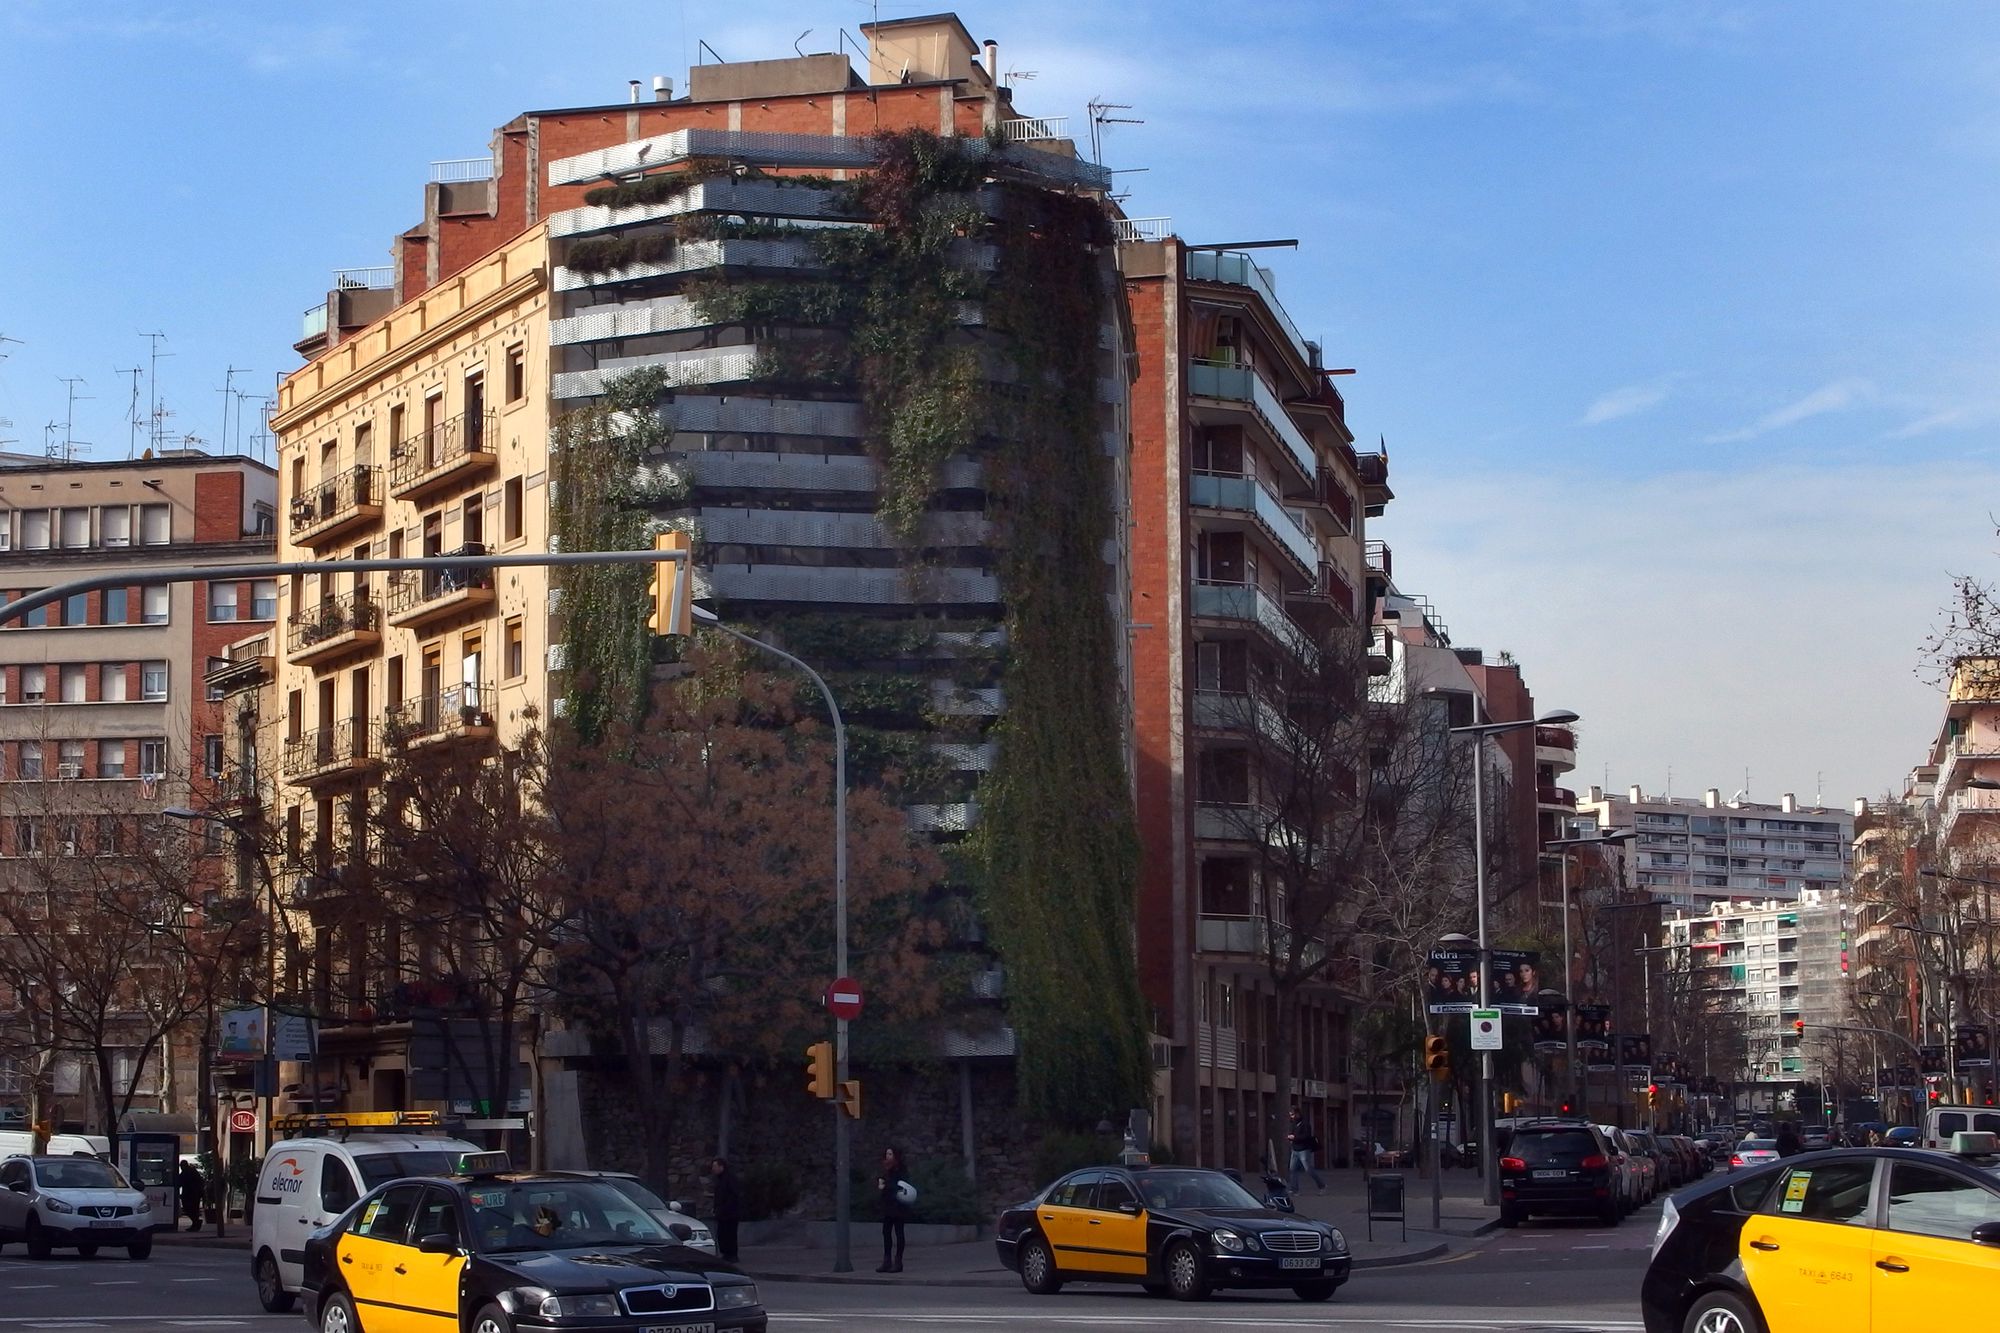 Barcelona | Després de l’urbanisme tàctic arriba el "verd tàctic"